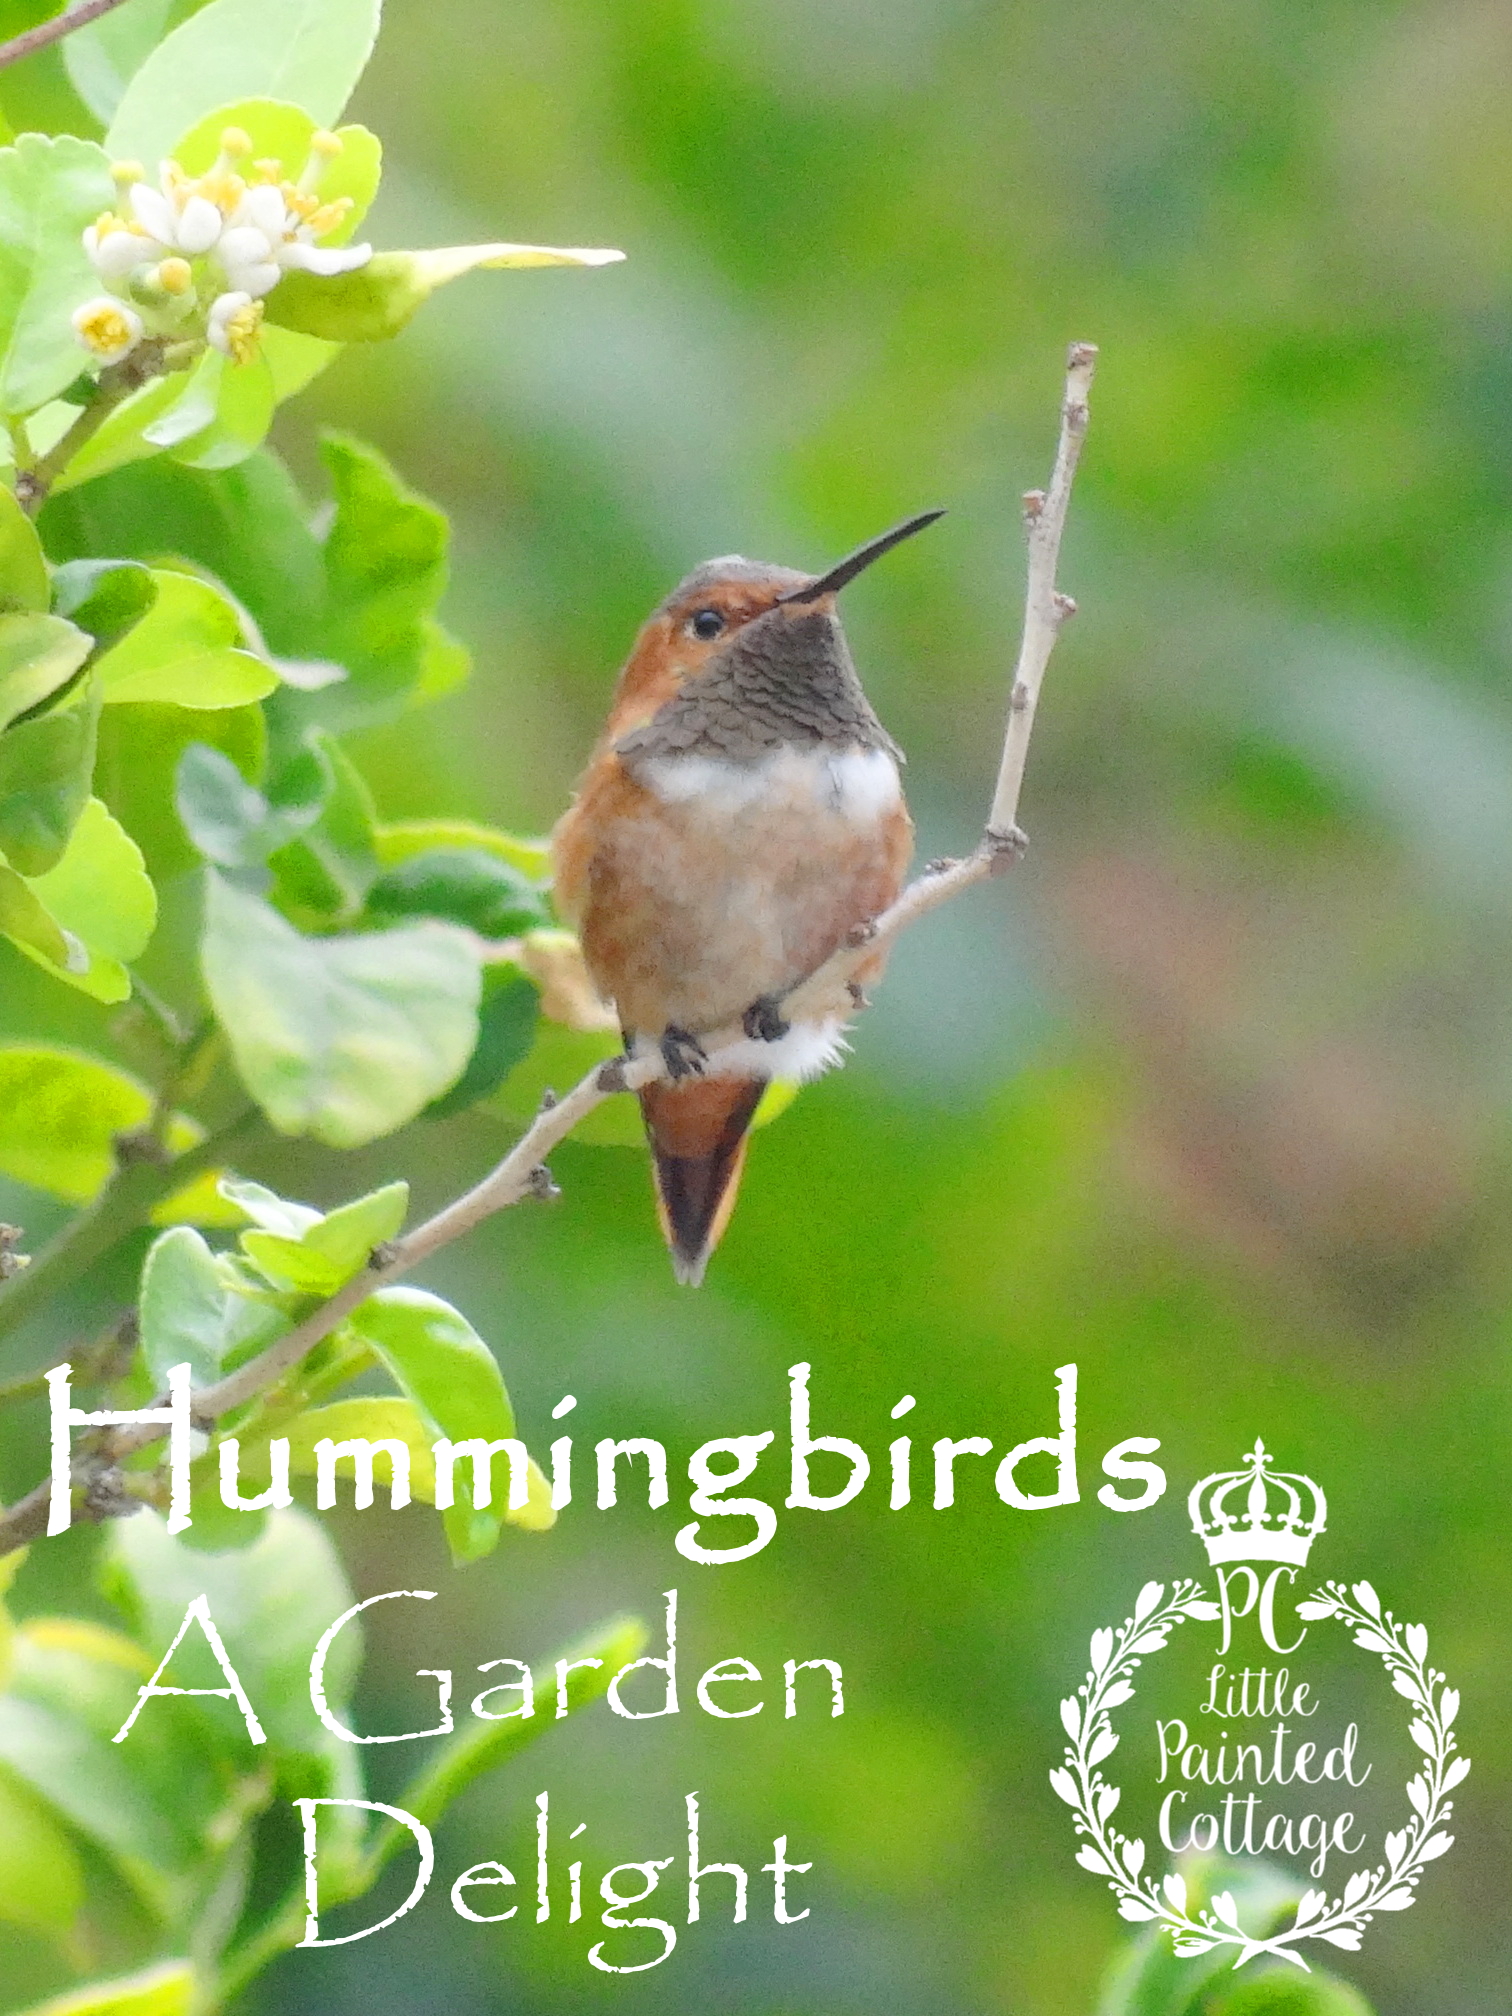 Painted Cottage Hummingbirds